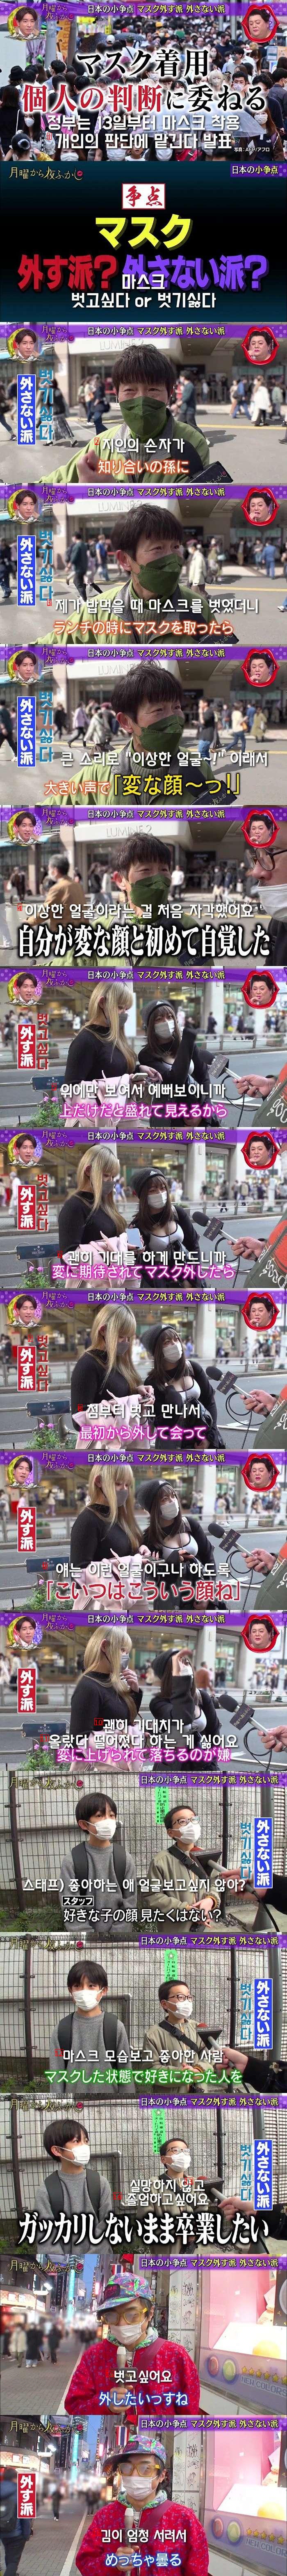 日本マスク着用街頭インタビュー